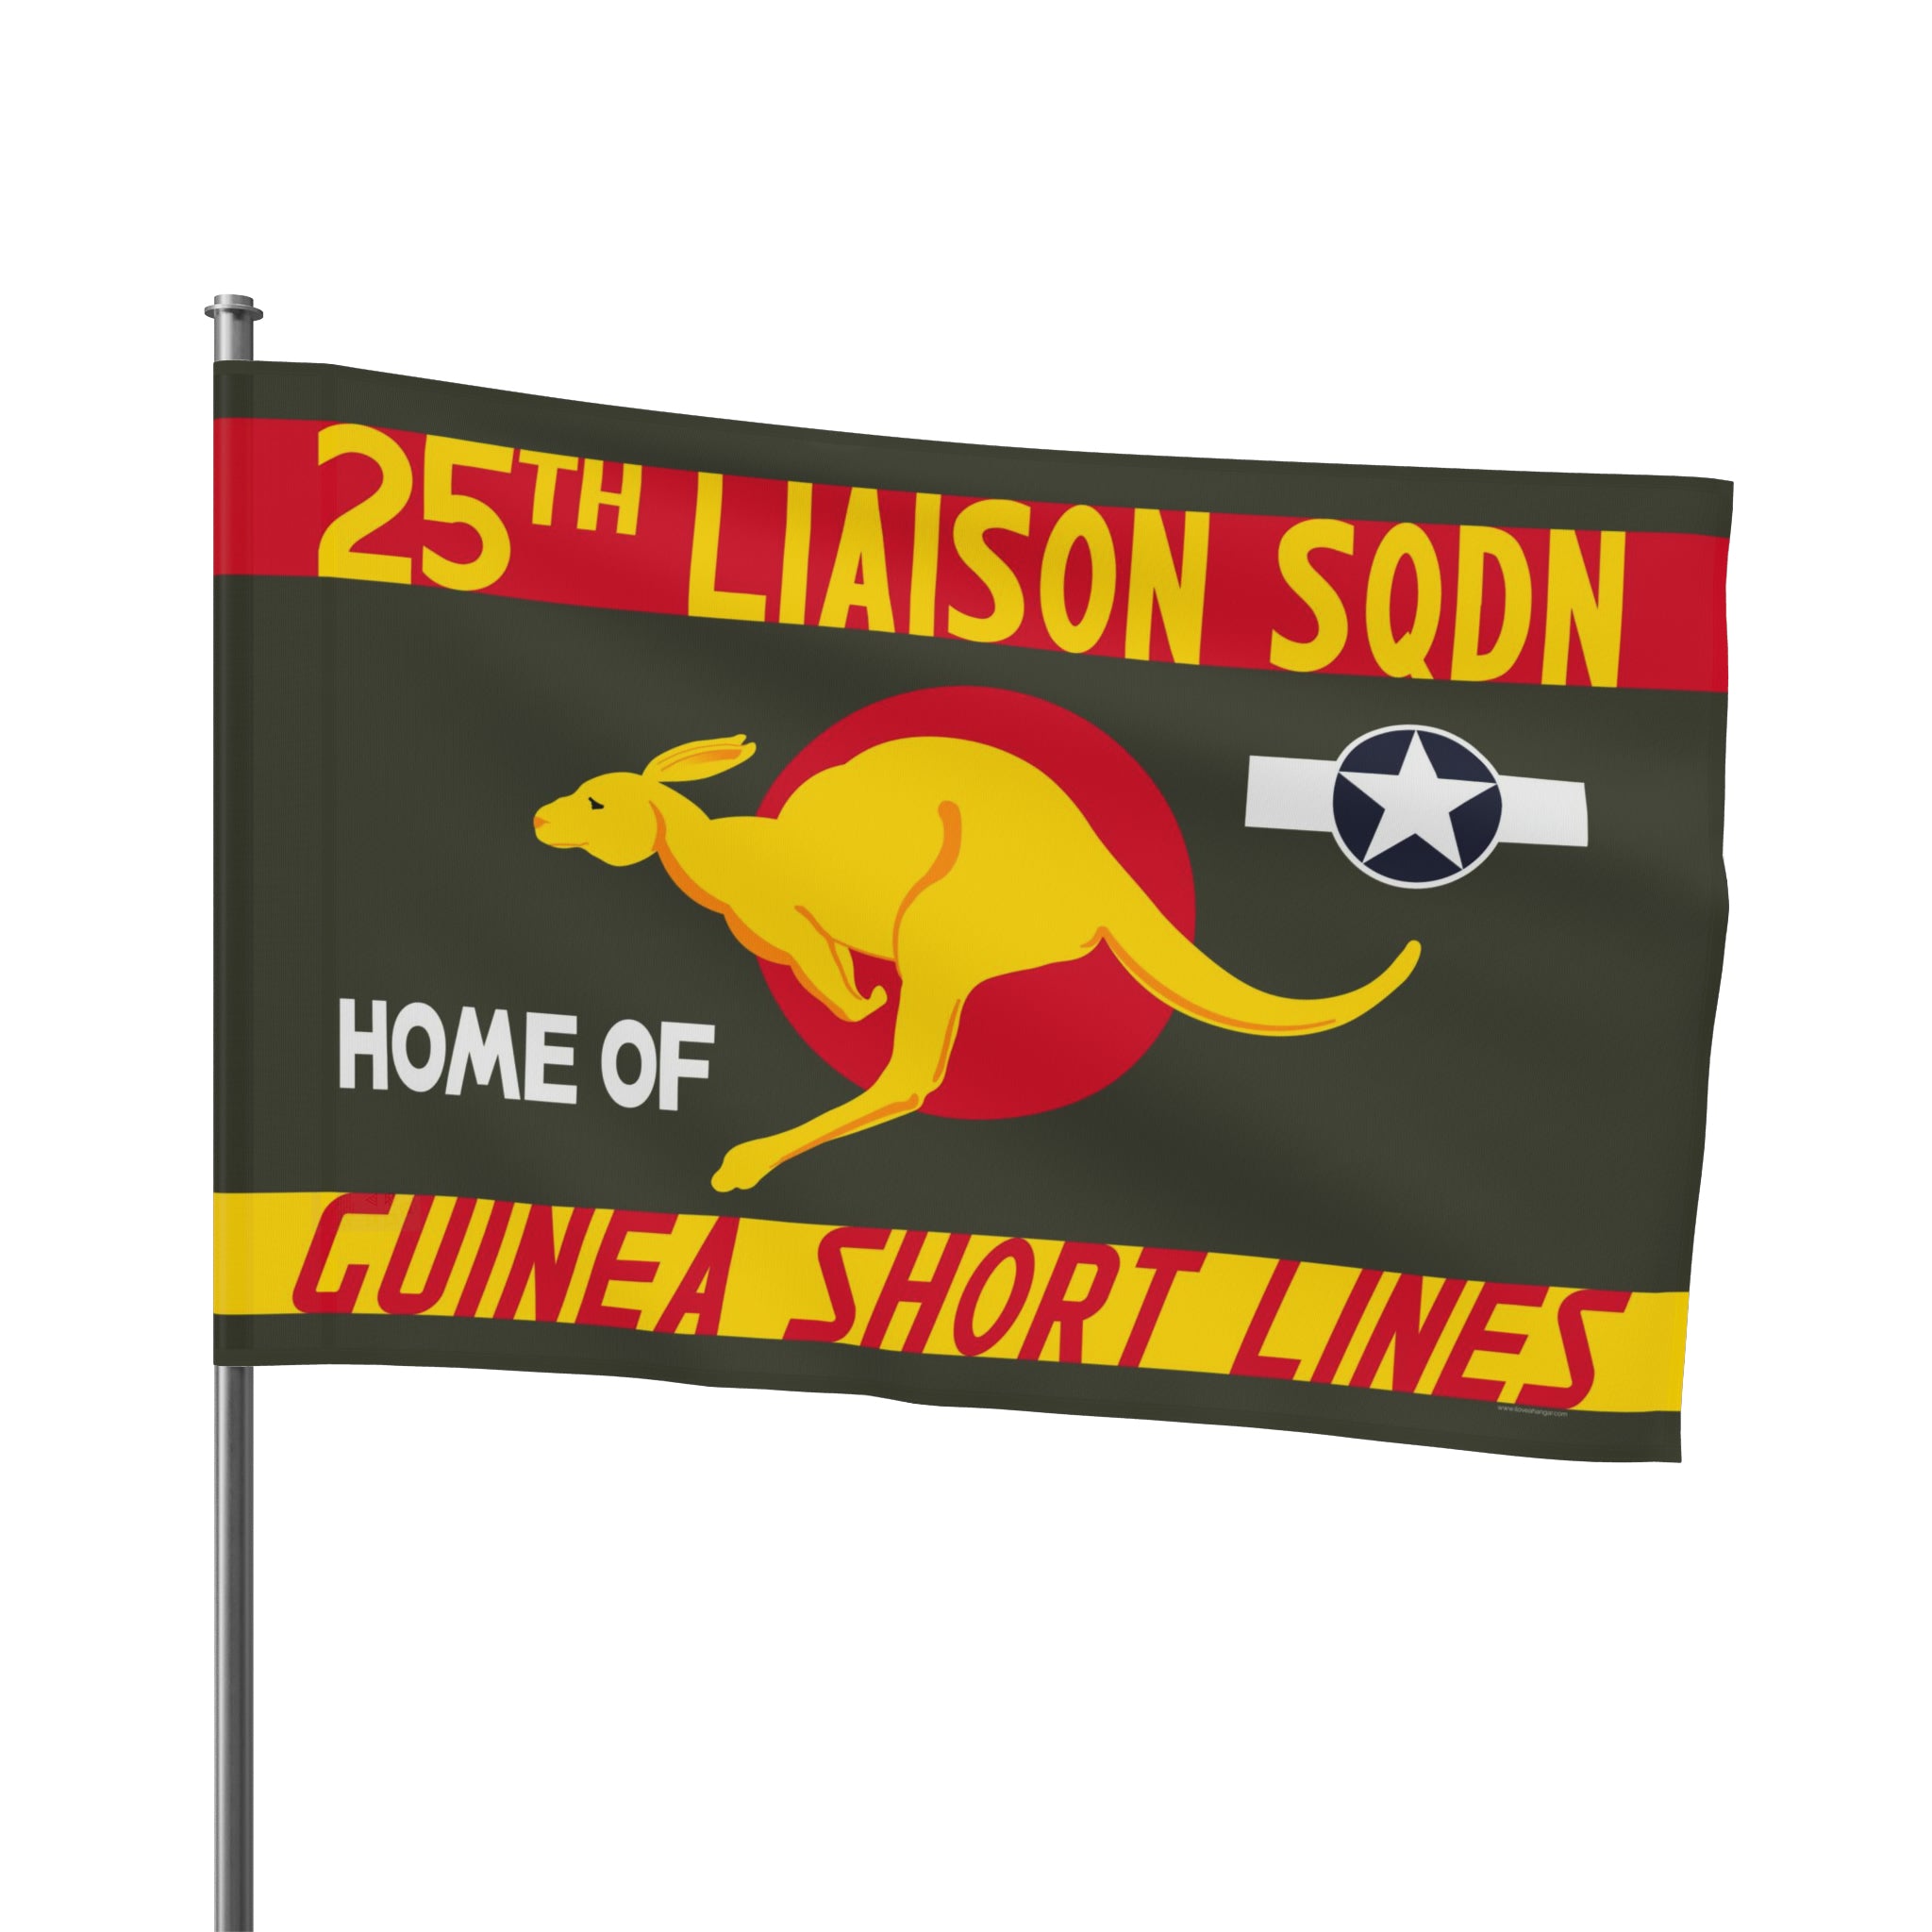 25th Liason Squadron (Guinea Short Lines) Flag - I Love a Hangar